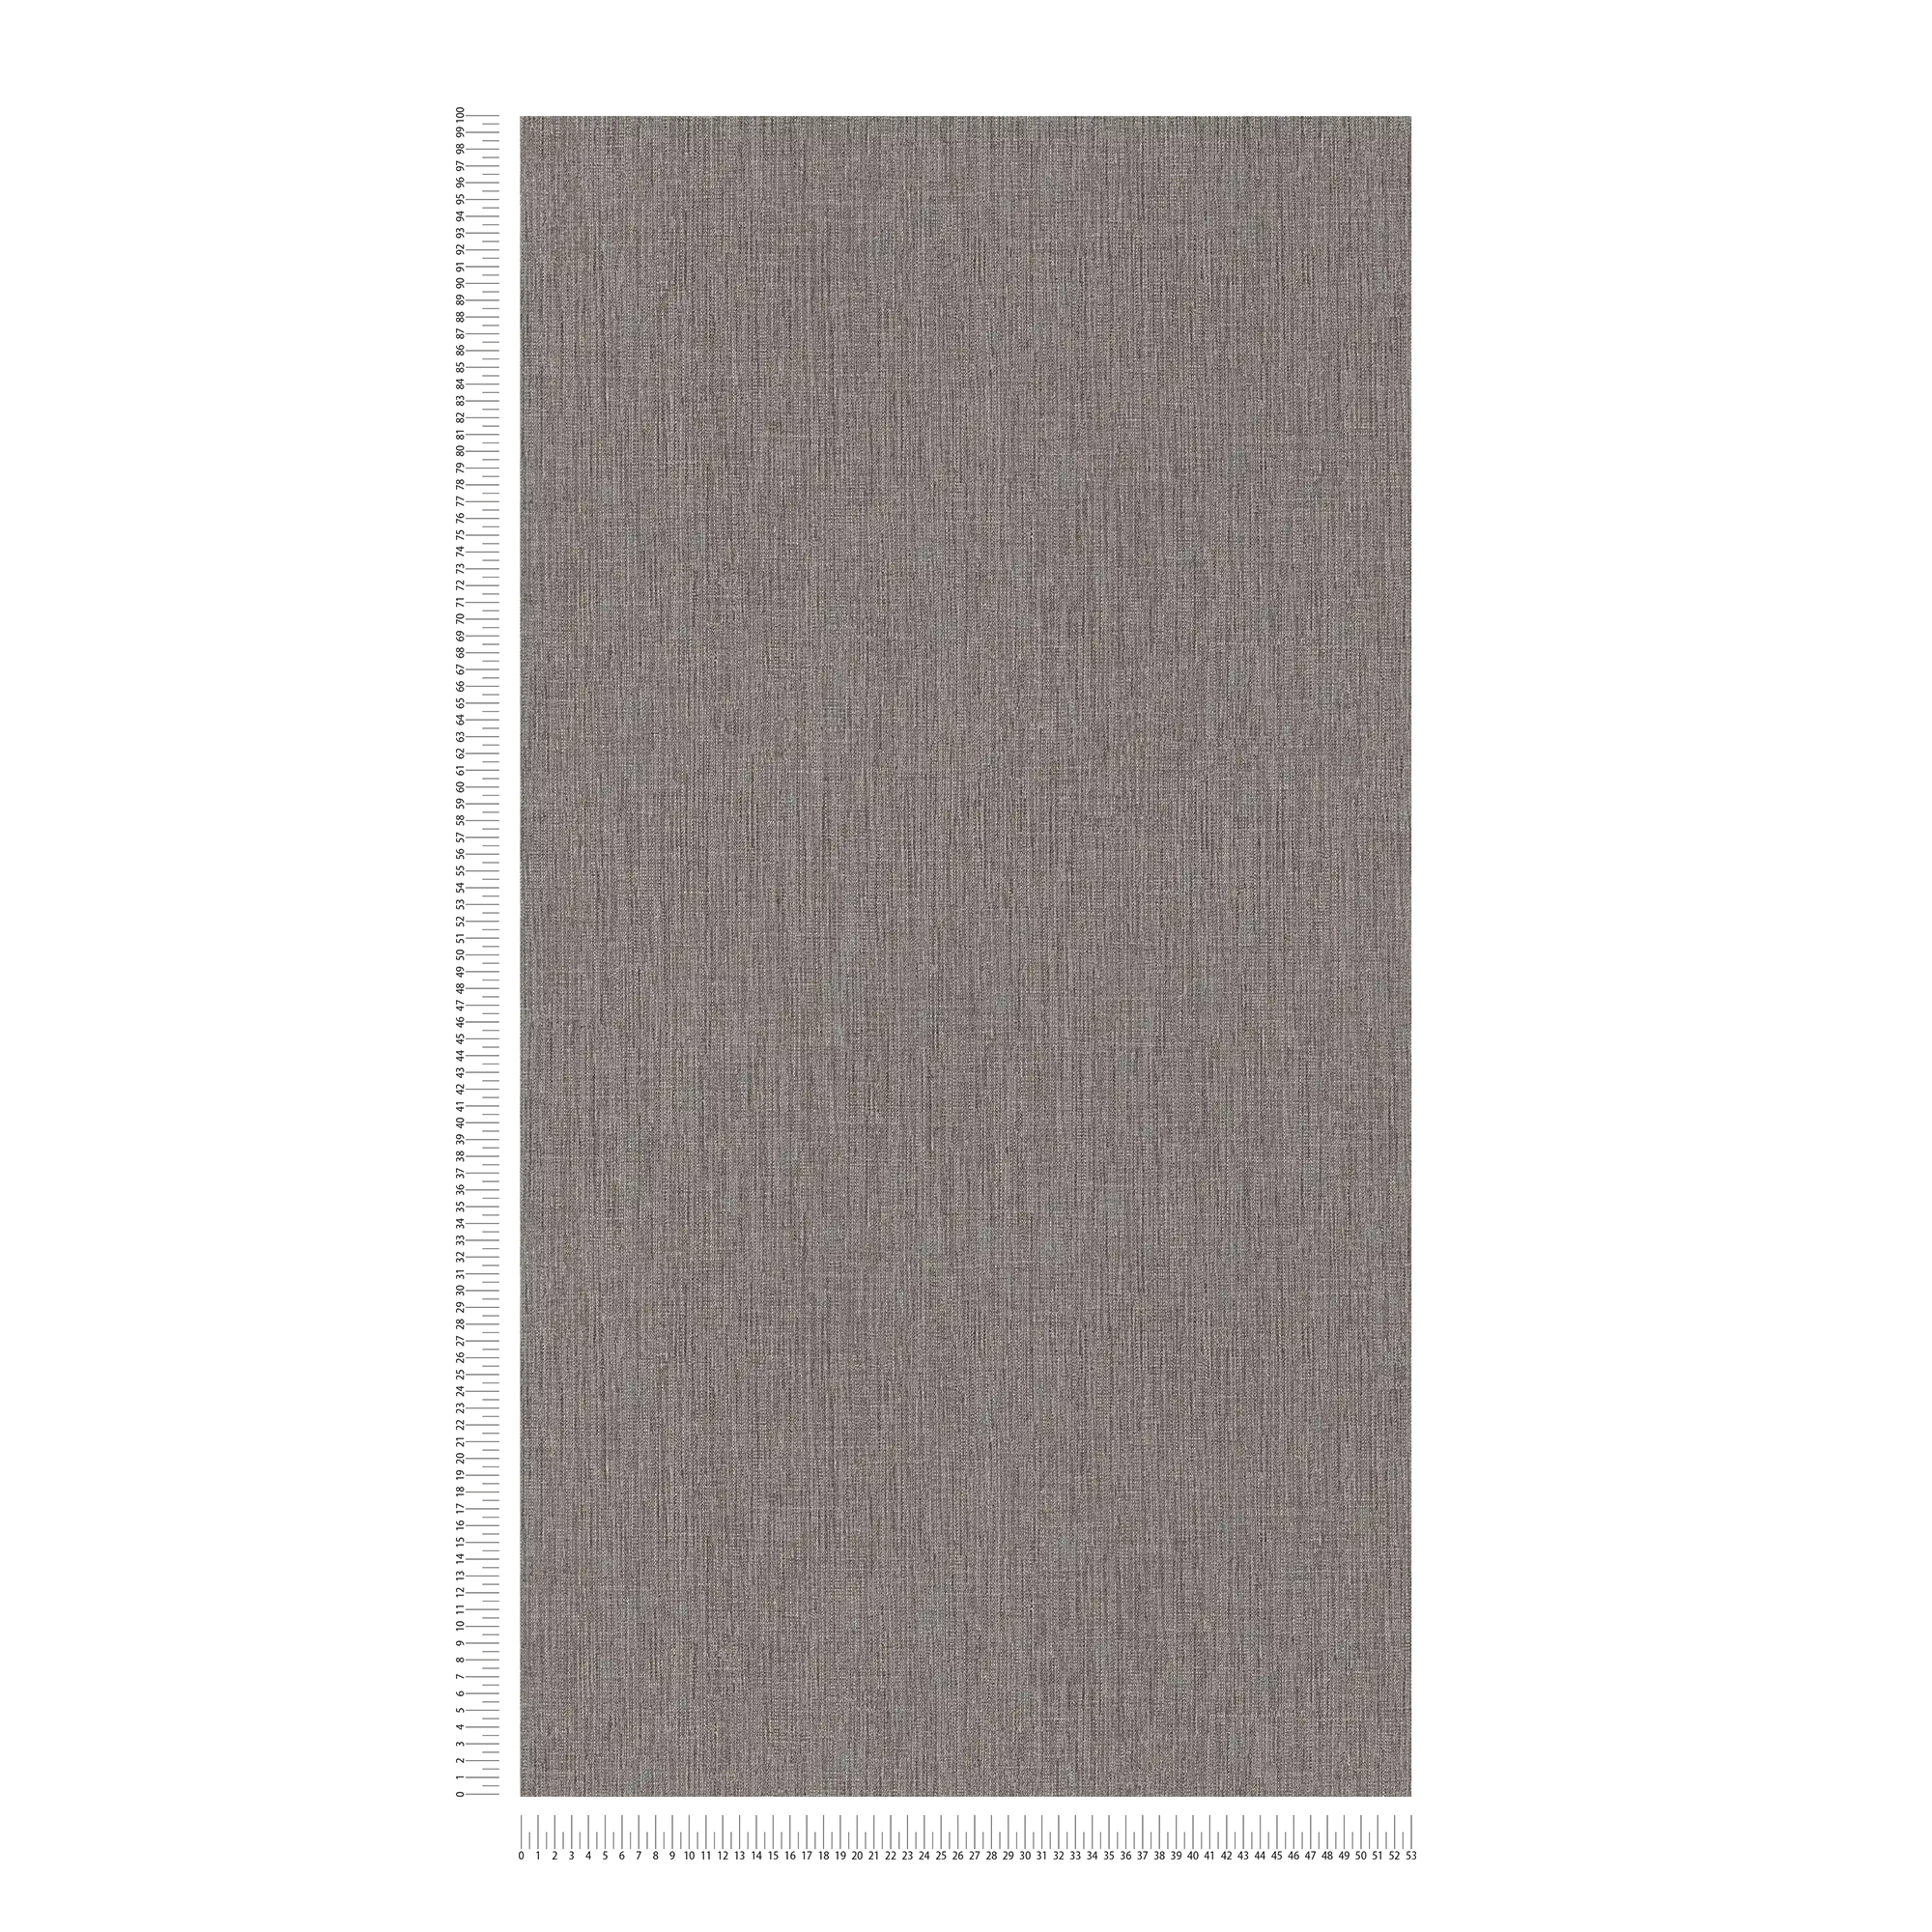             Papel pintado de unidad de sombreado con patrón tono sobre tono - Marrón
        